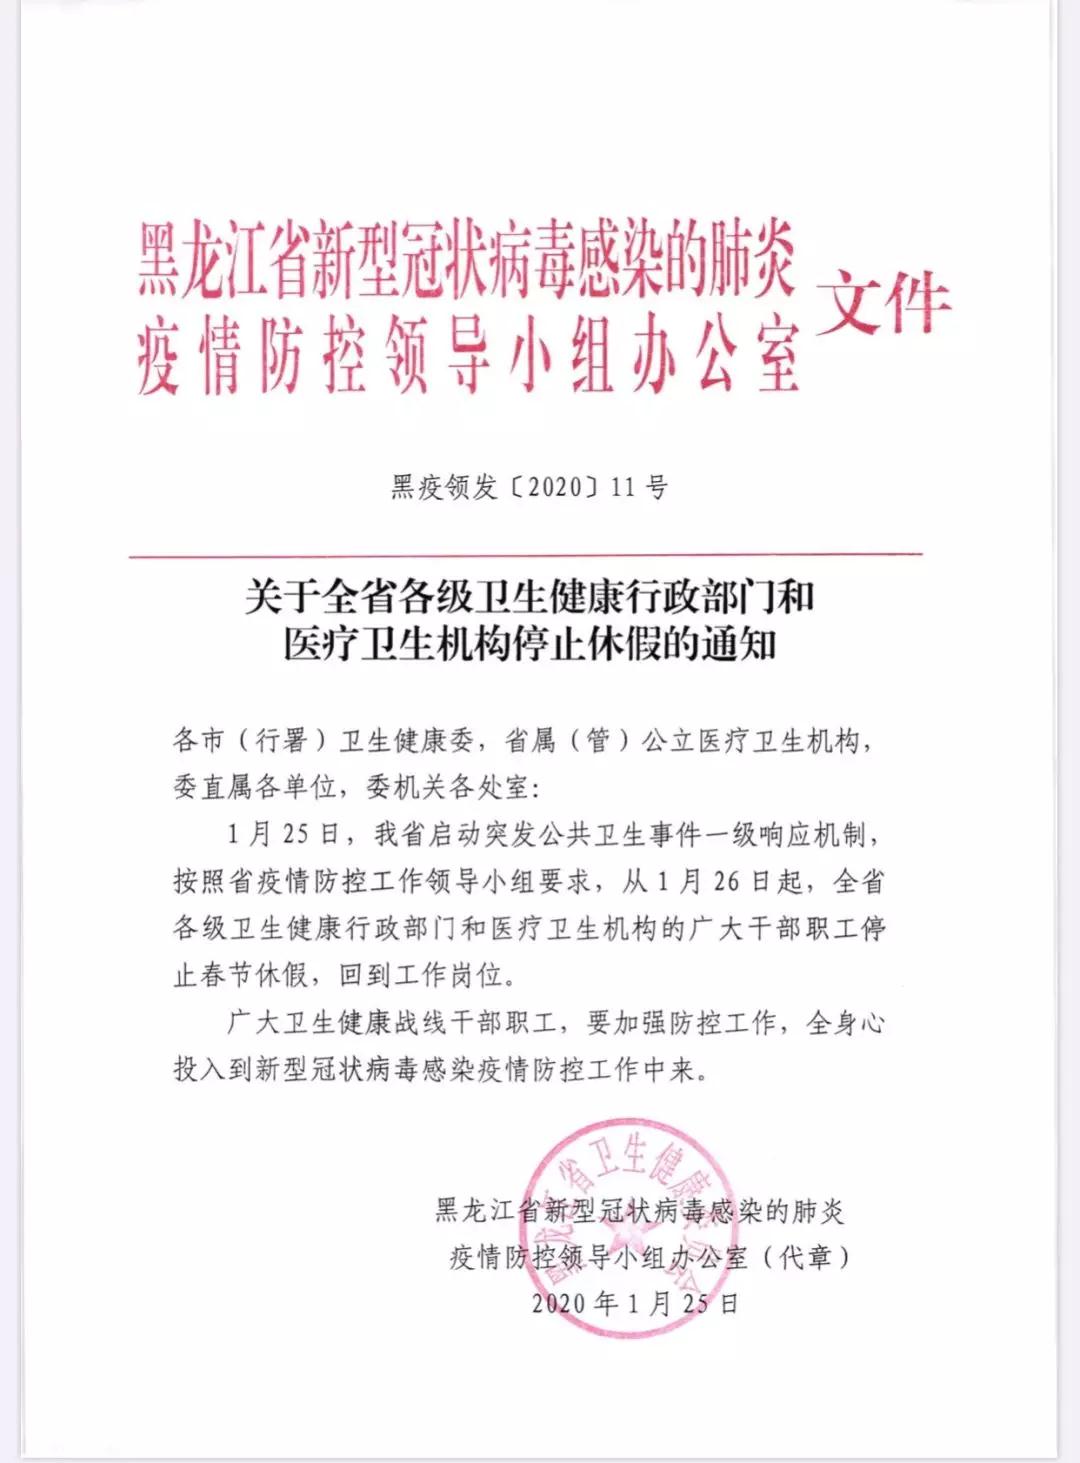 黑龙江省新型冠状病毒感染的肺炎疫情防控领导小组办公室发布通知